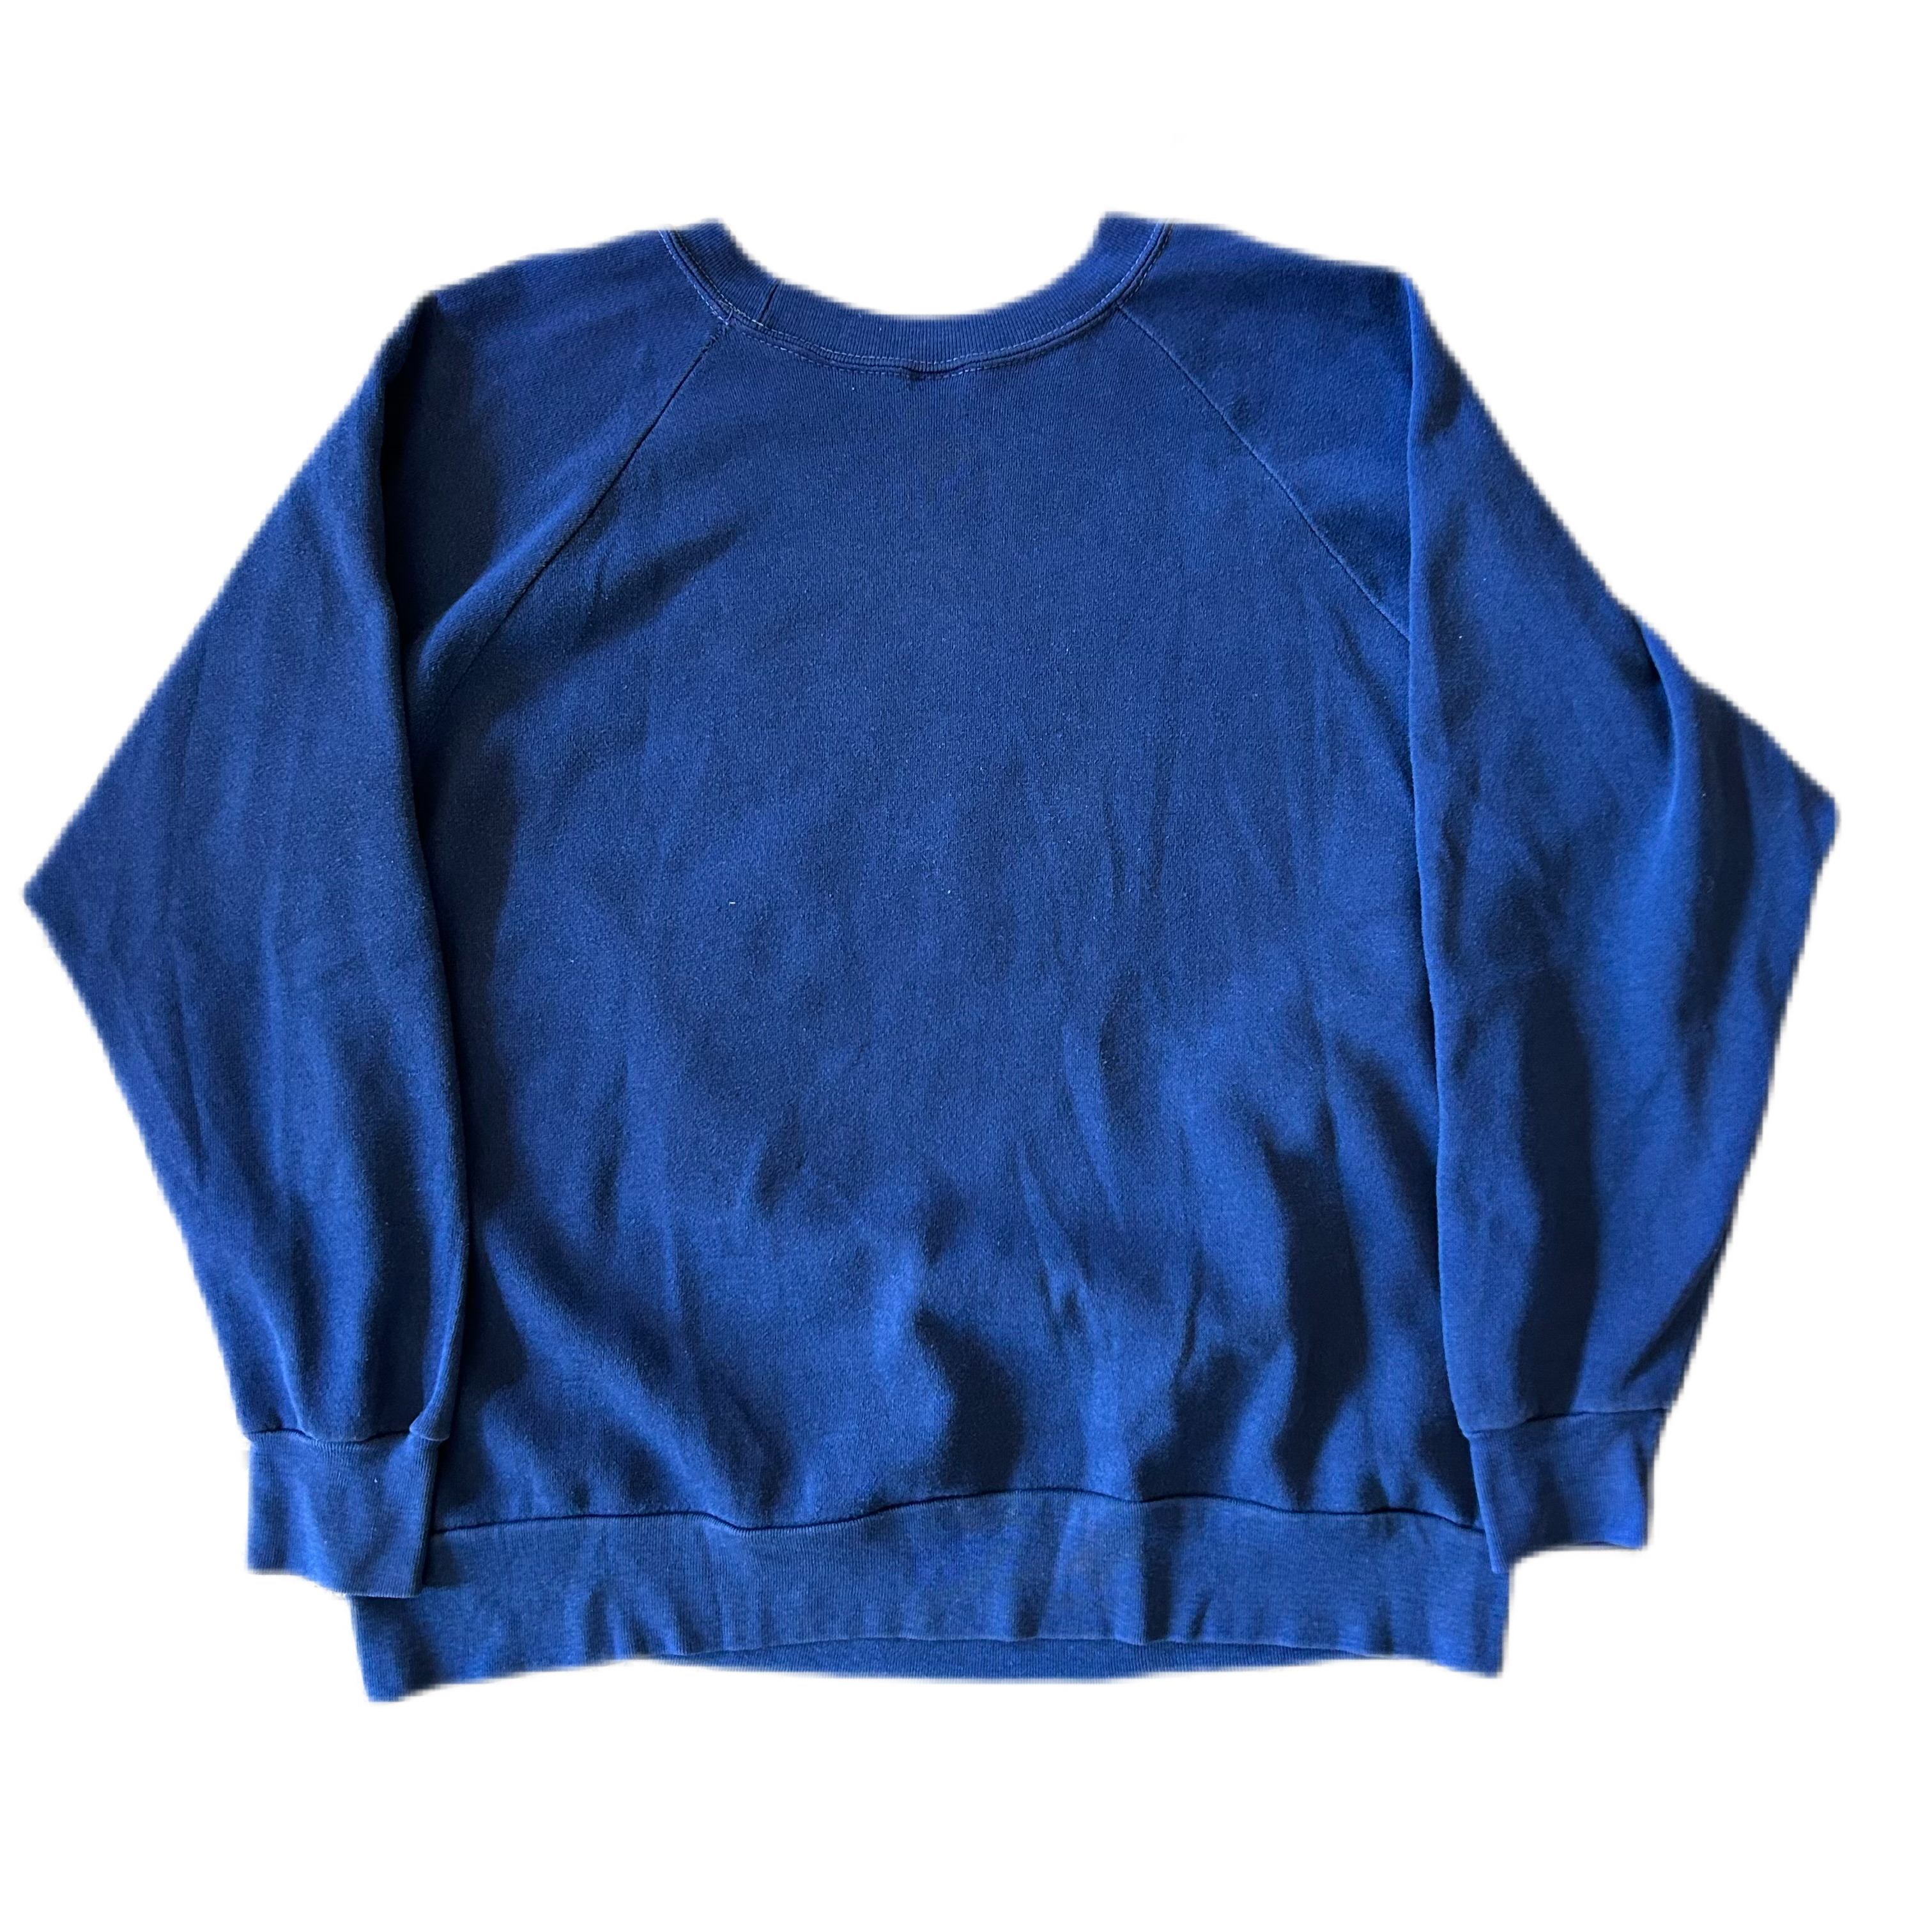 Vintage 1980s FDNY Crewneck Sweatshirt